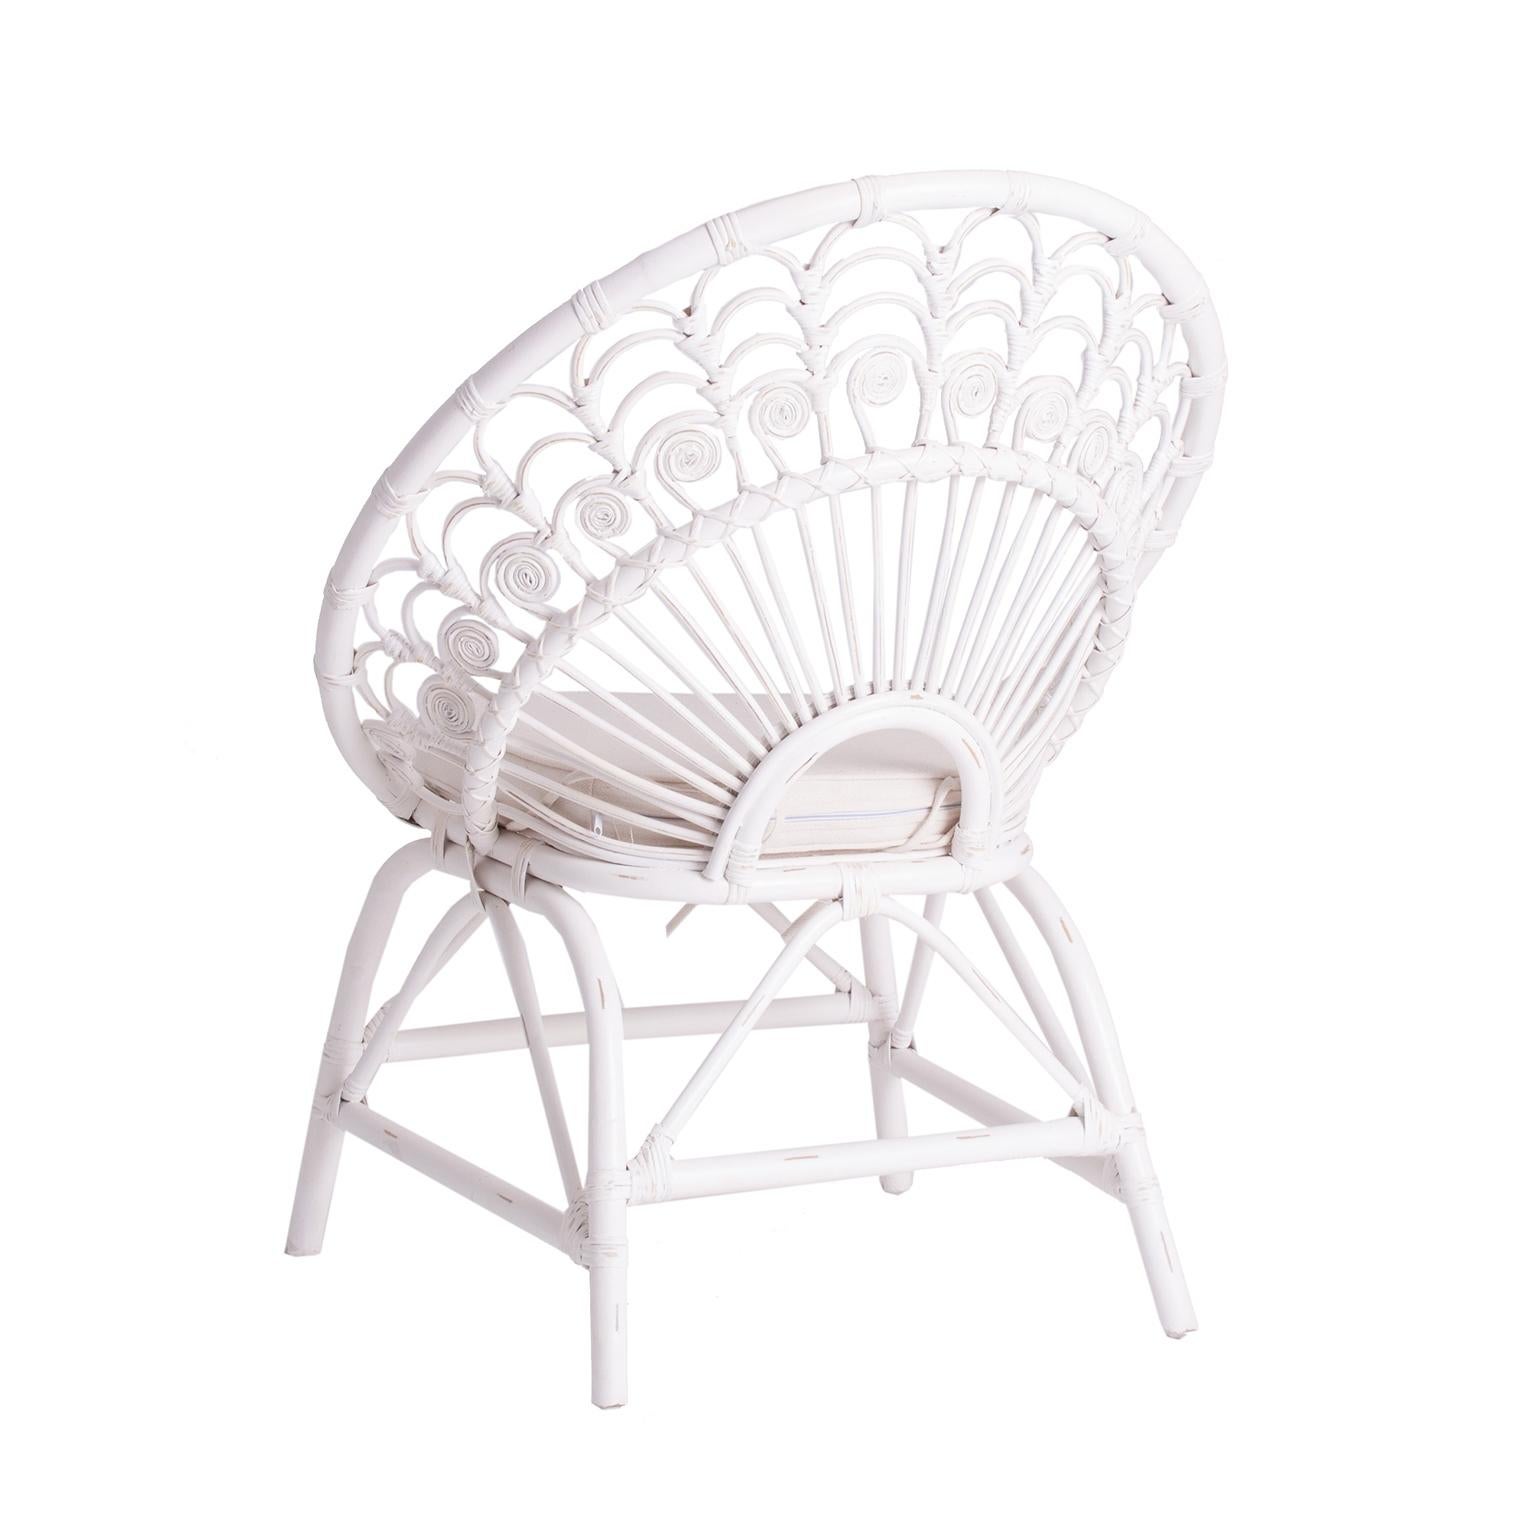 Sculptural et magnifique fauteuil en rotin et osier au design de paon. Style vintage avec effet de patine et un look bohème chic !